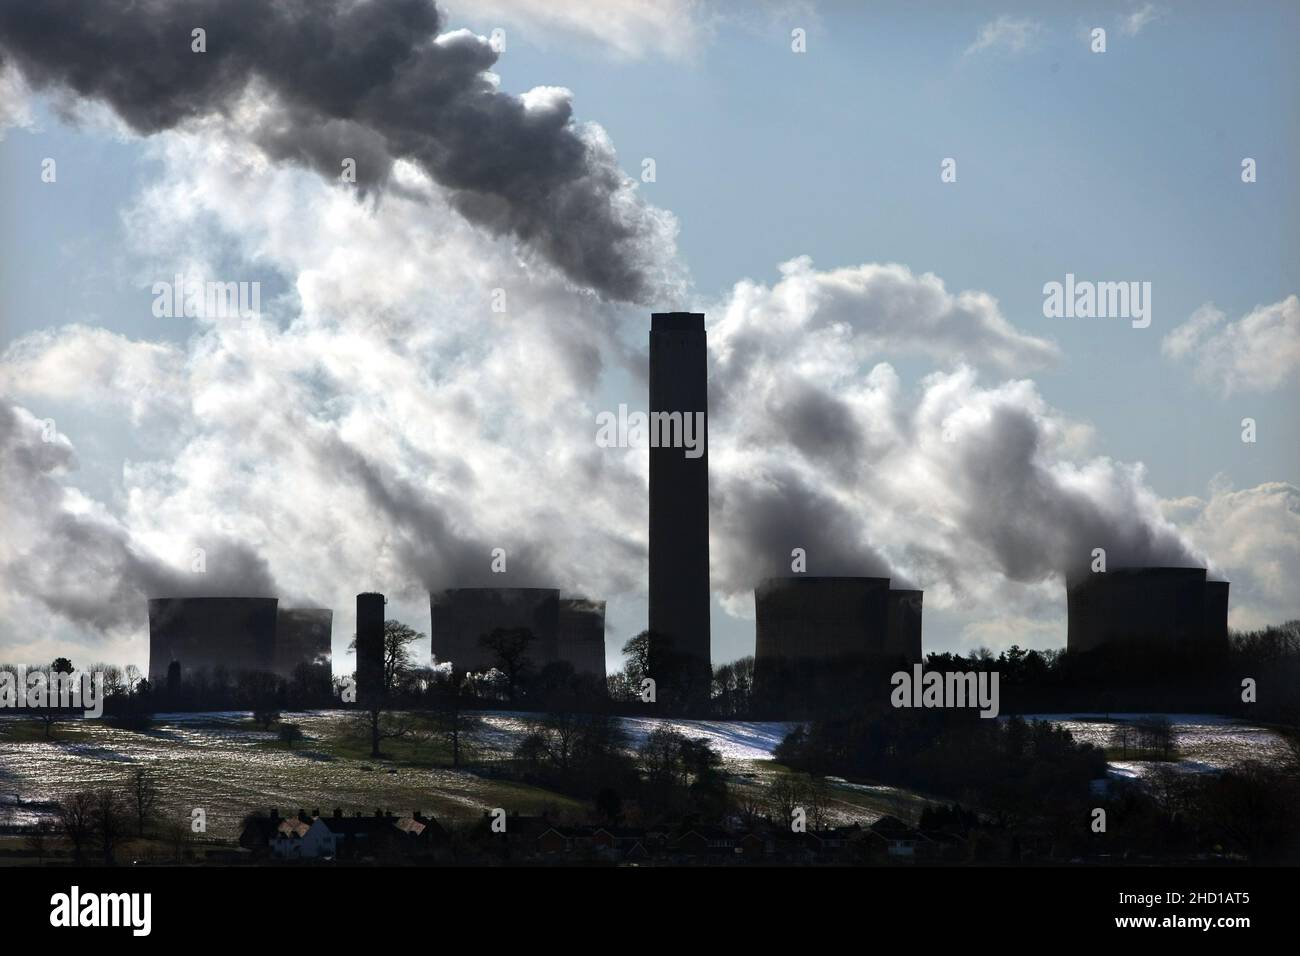 Foto del archivo fechada el 10/02/09 de Ratcliffe en la central eléctrica de Soar cerca de Nottingham. Los grupos conspiradores de Covid-19 pueden girar para impulsar la desinformación climática en 2022, advirtieron los expertos. Fecha de emisión: Martes 10 de febrero de 2009. Foto de stock